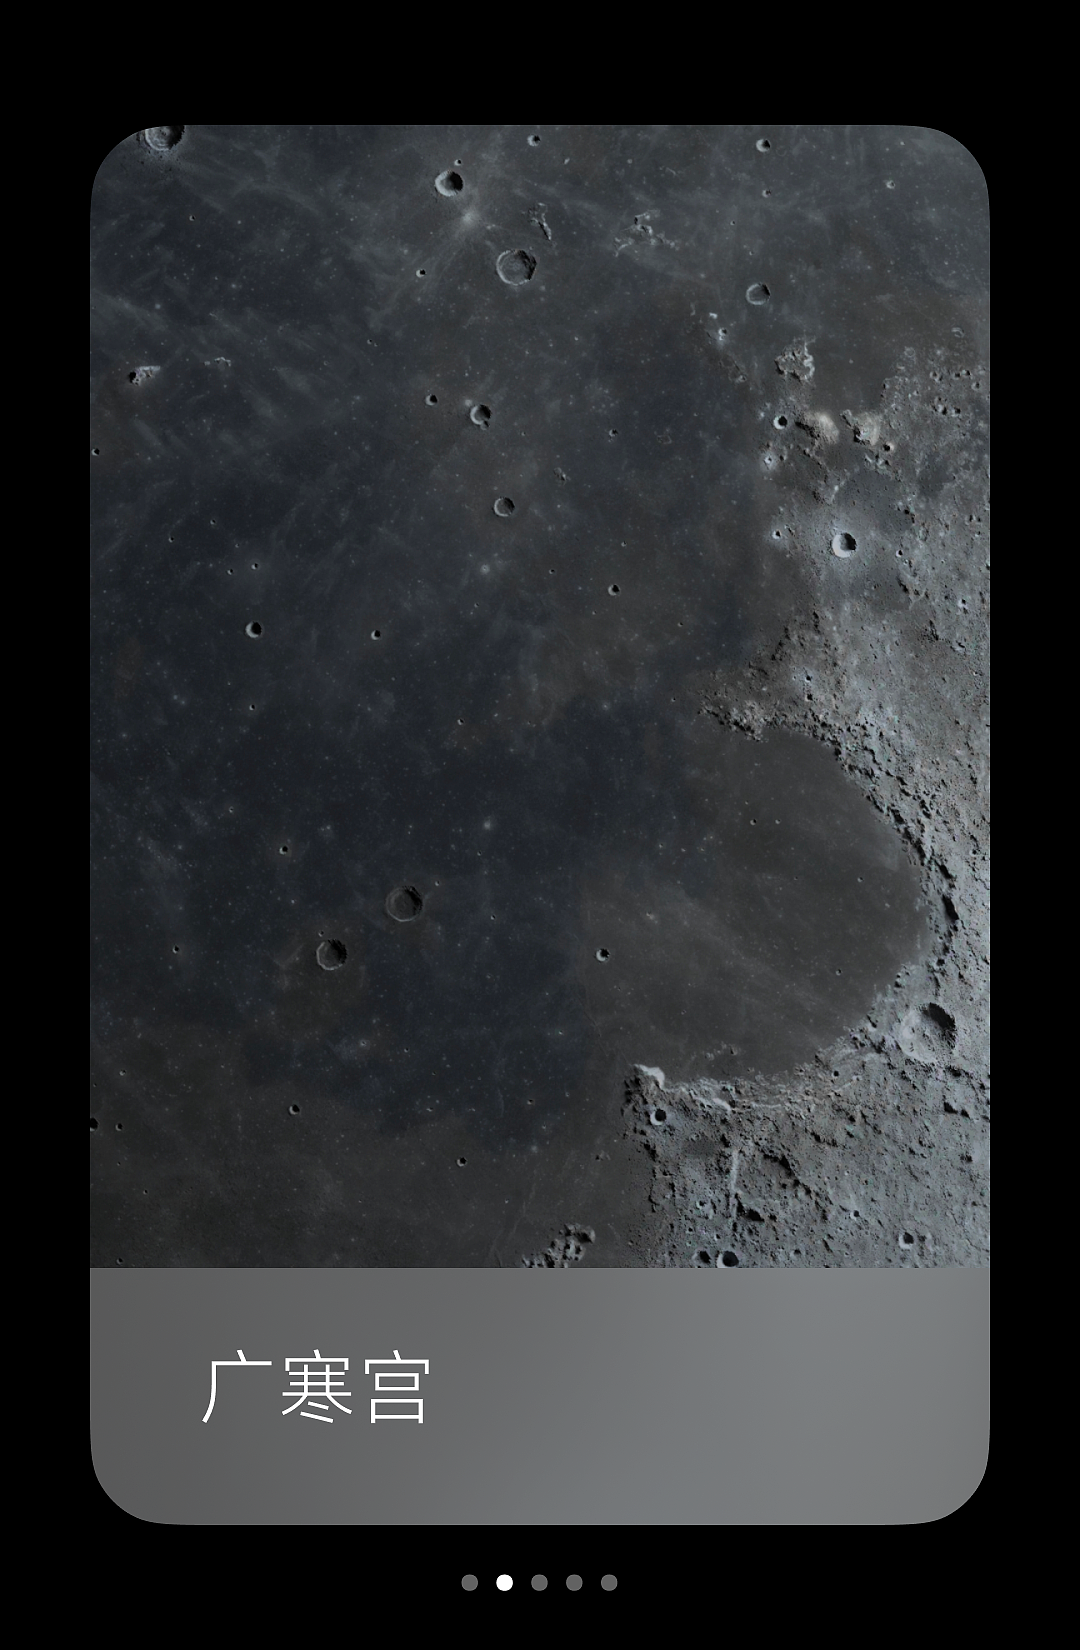 小米超级壁纸新增“月球”主题：基于澎湃 OS 图形子系统，内存占用大幅降低 - 4